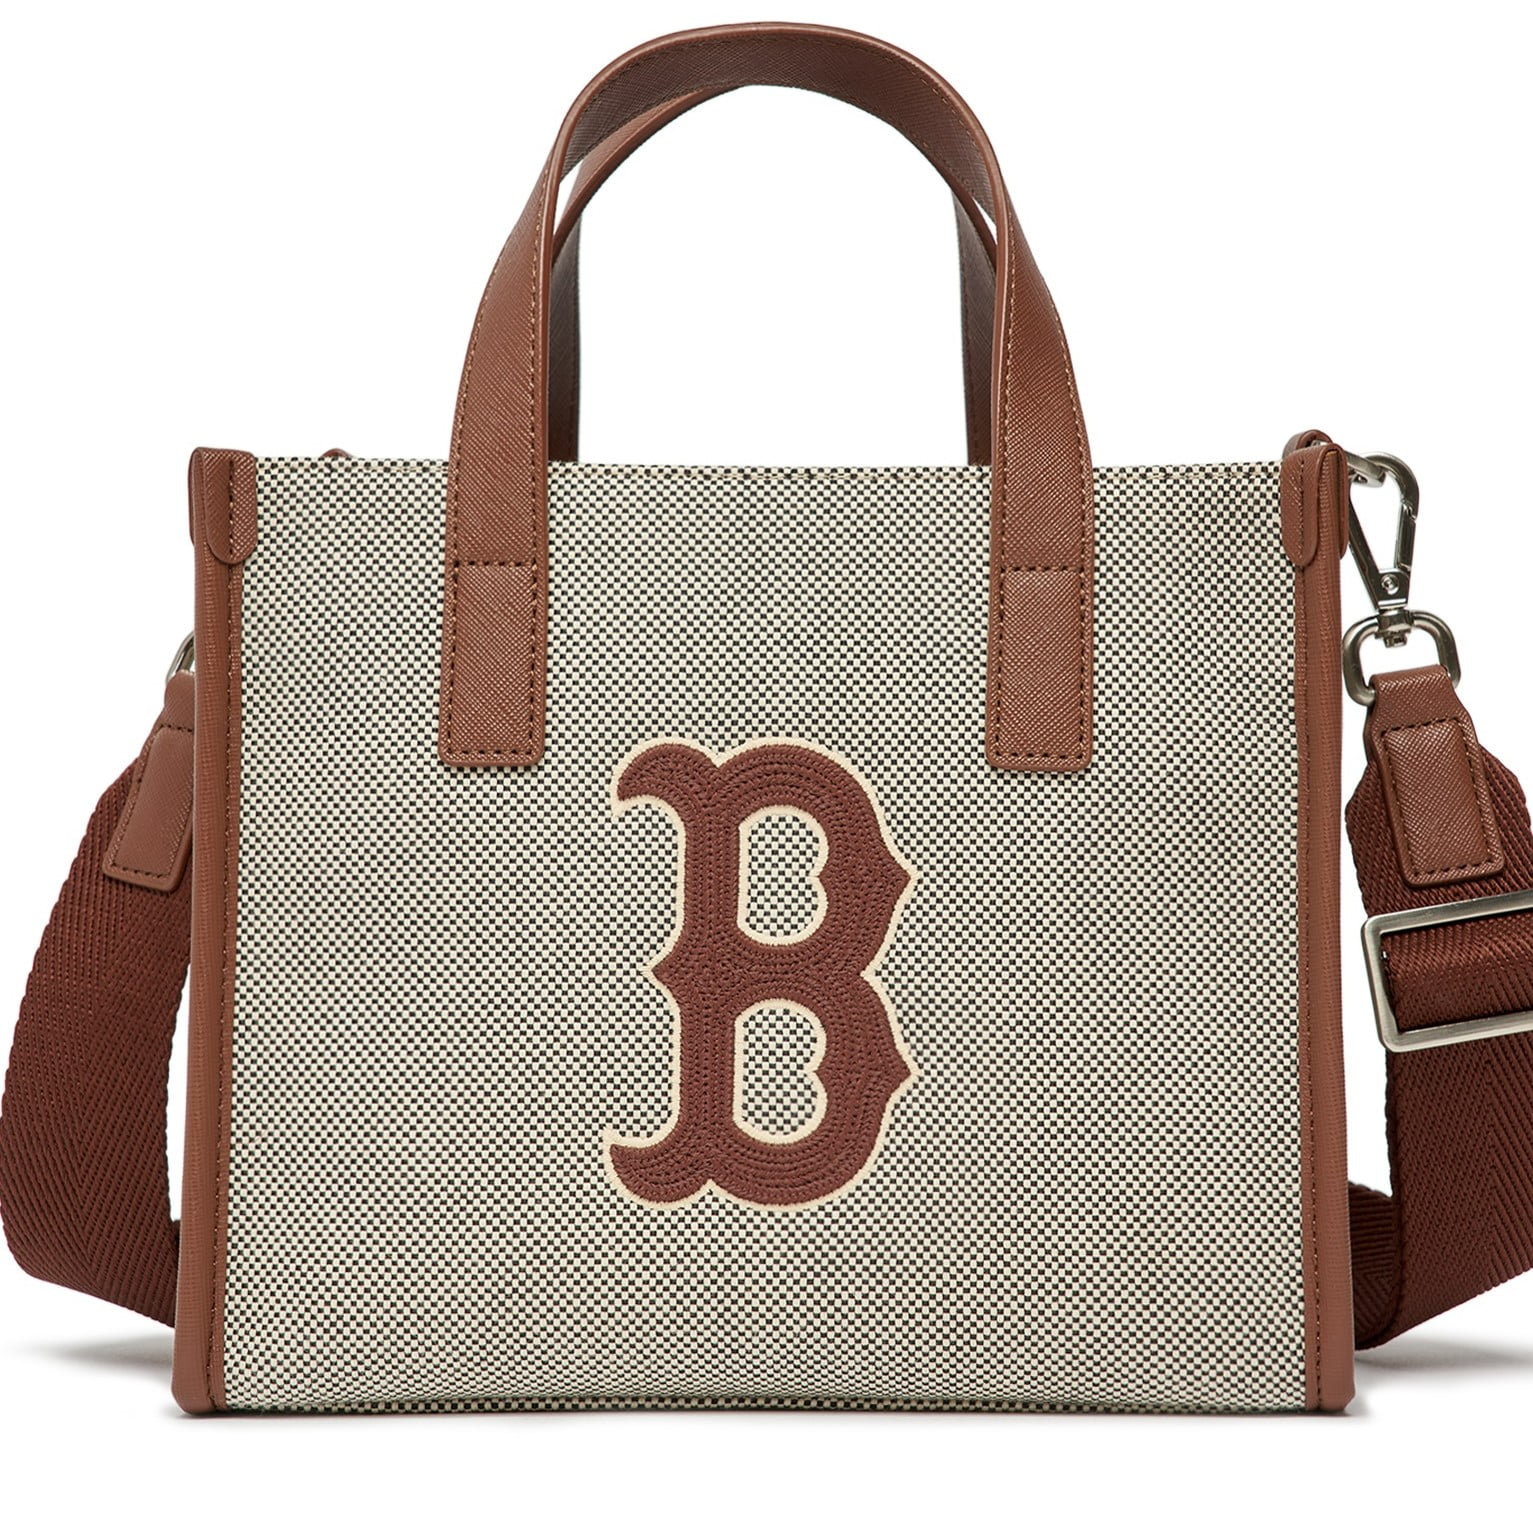 Dép MLB Boston siêu cấp logo chữ B thêu nổi sắc nét